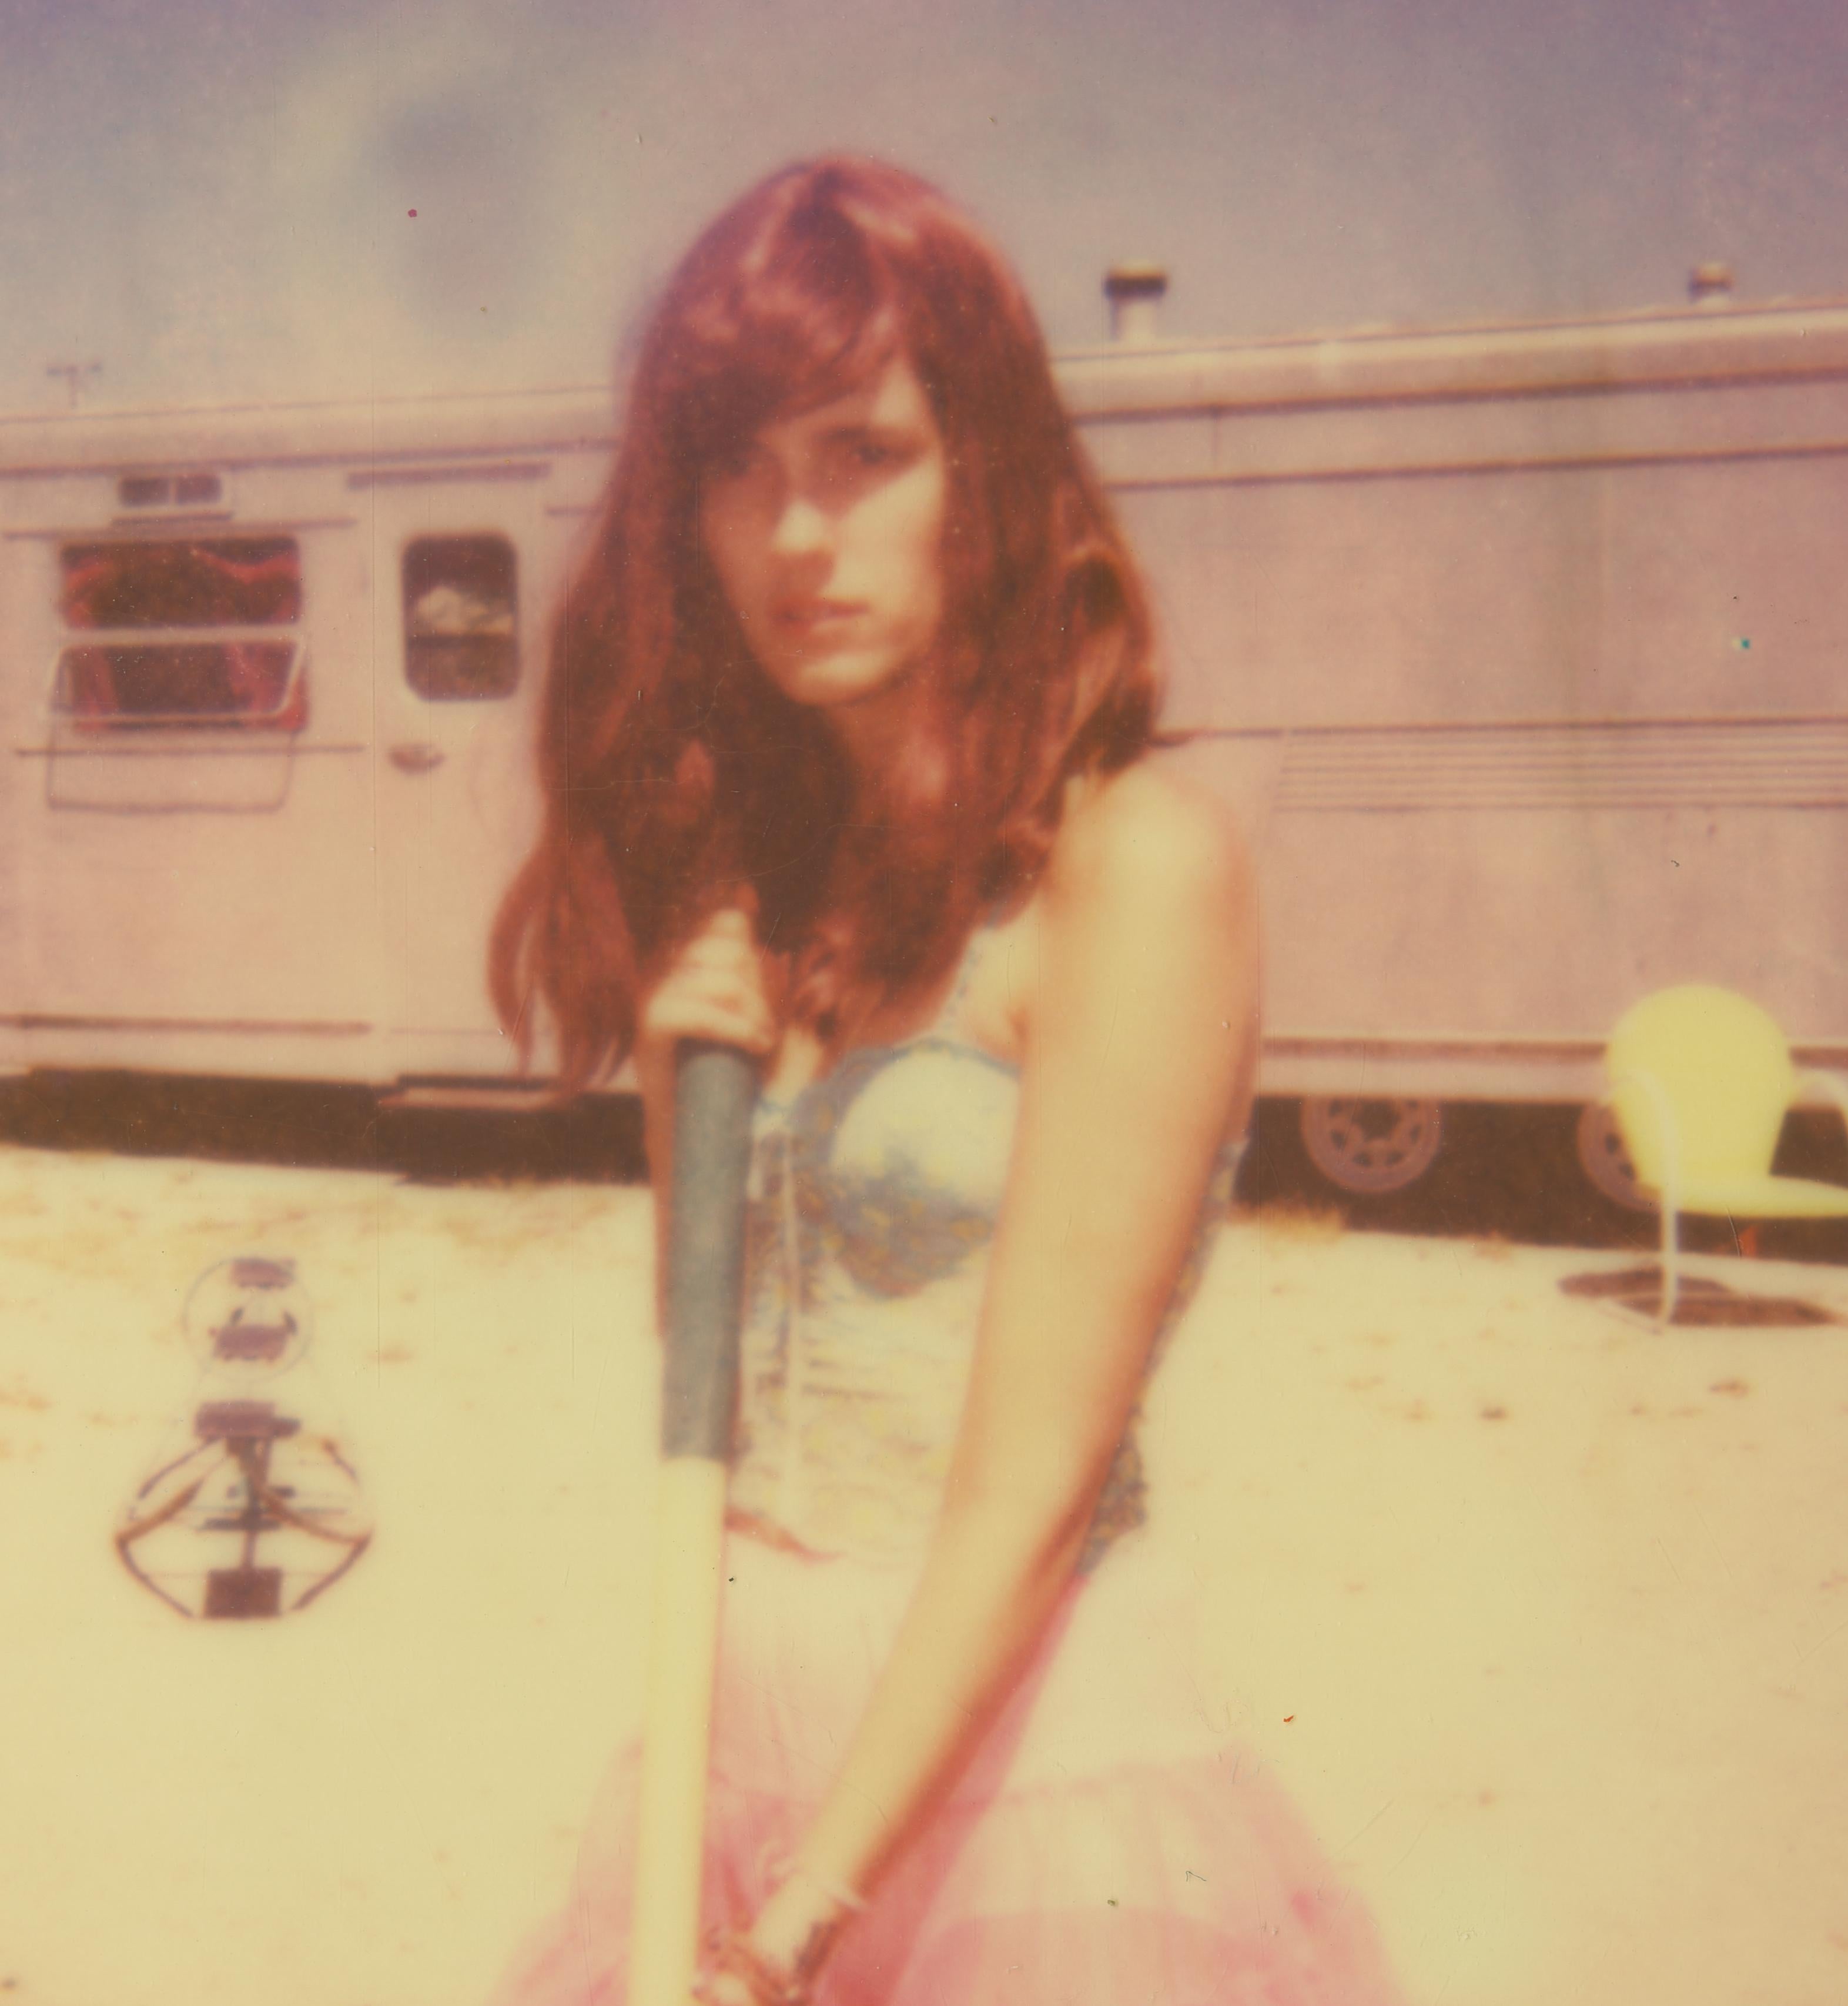 Un lieu solitaire et désertique (La fille derrière la clôture blanche) - Polaroid - Photograph de Stefanie Schneider